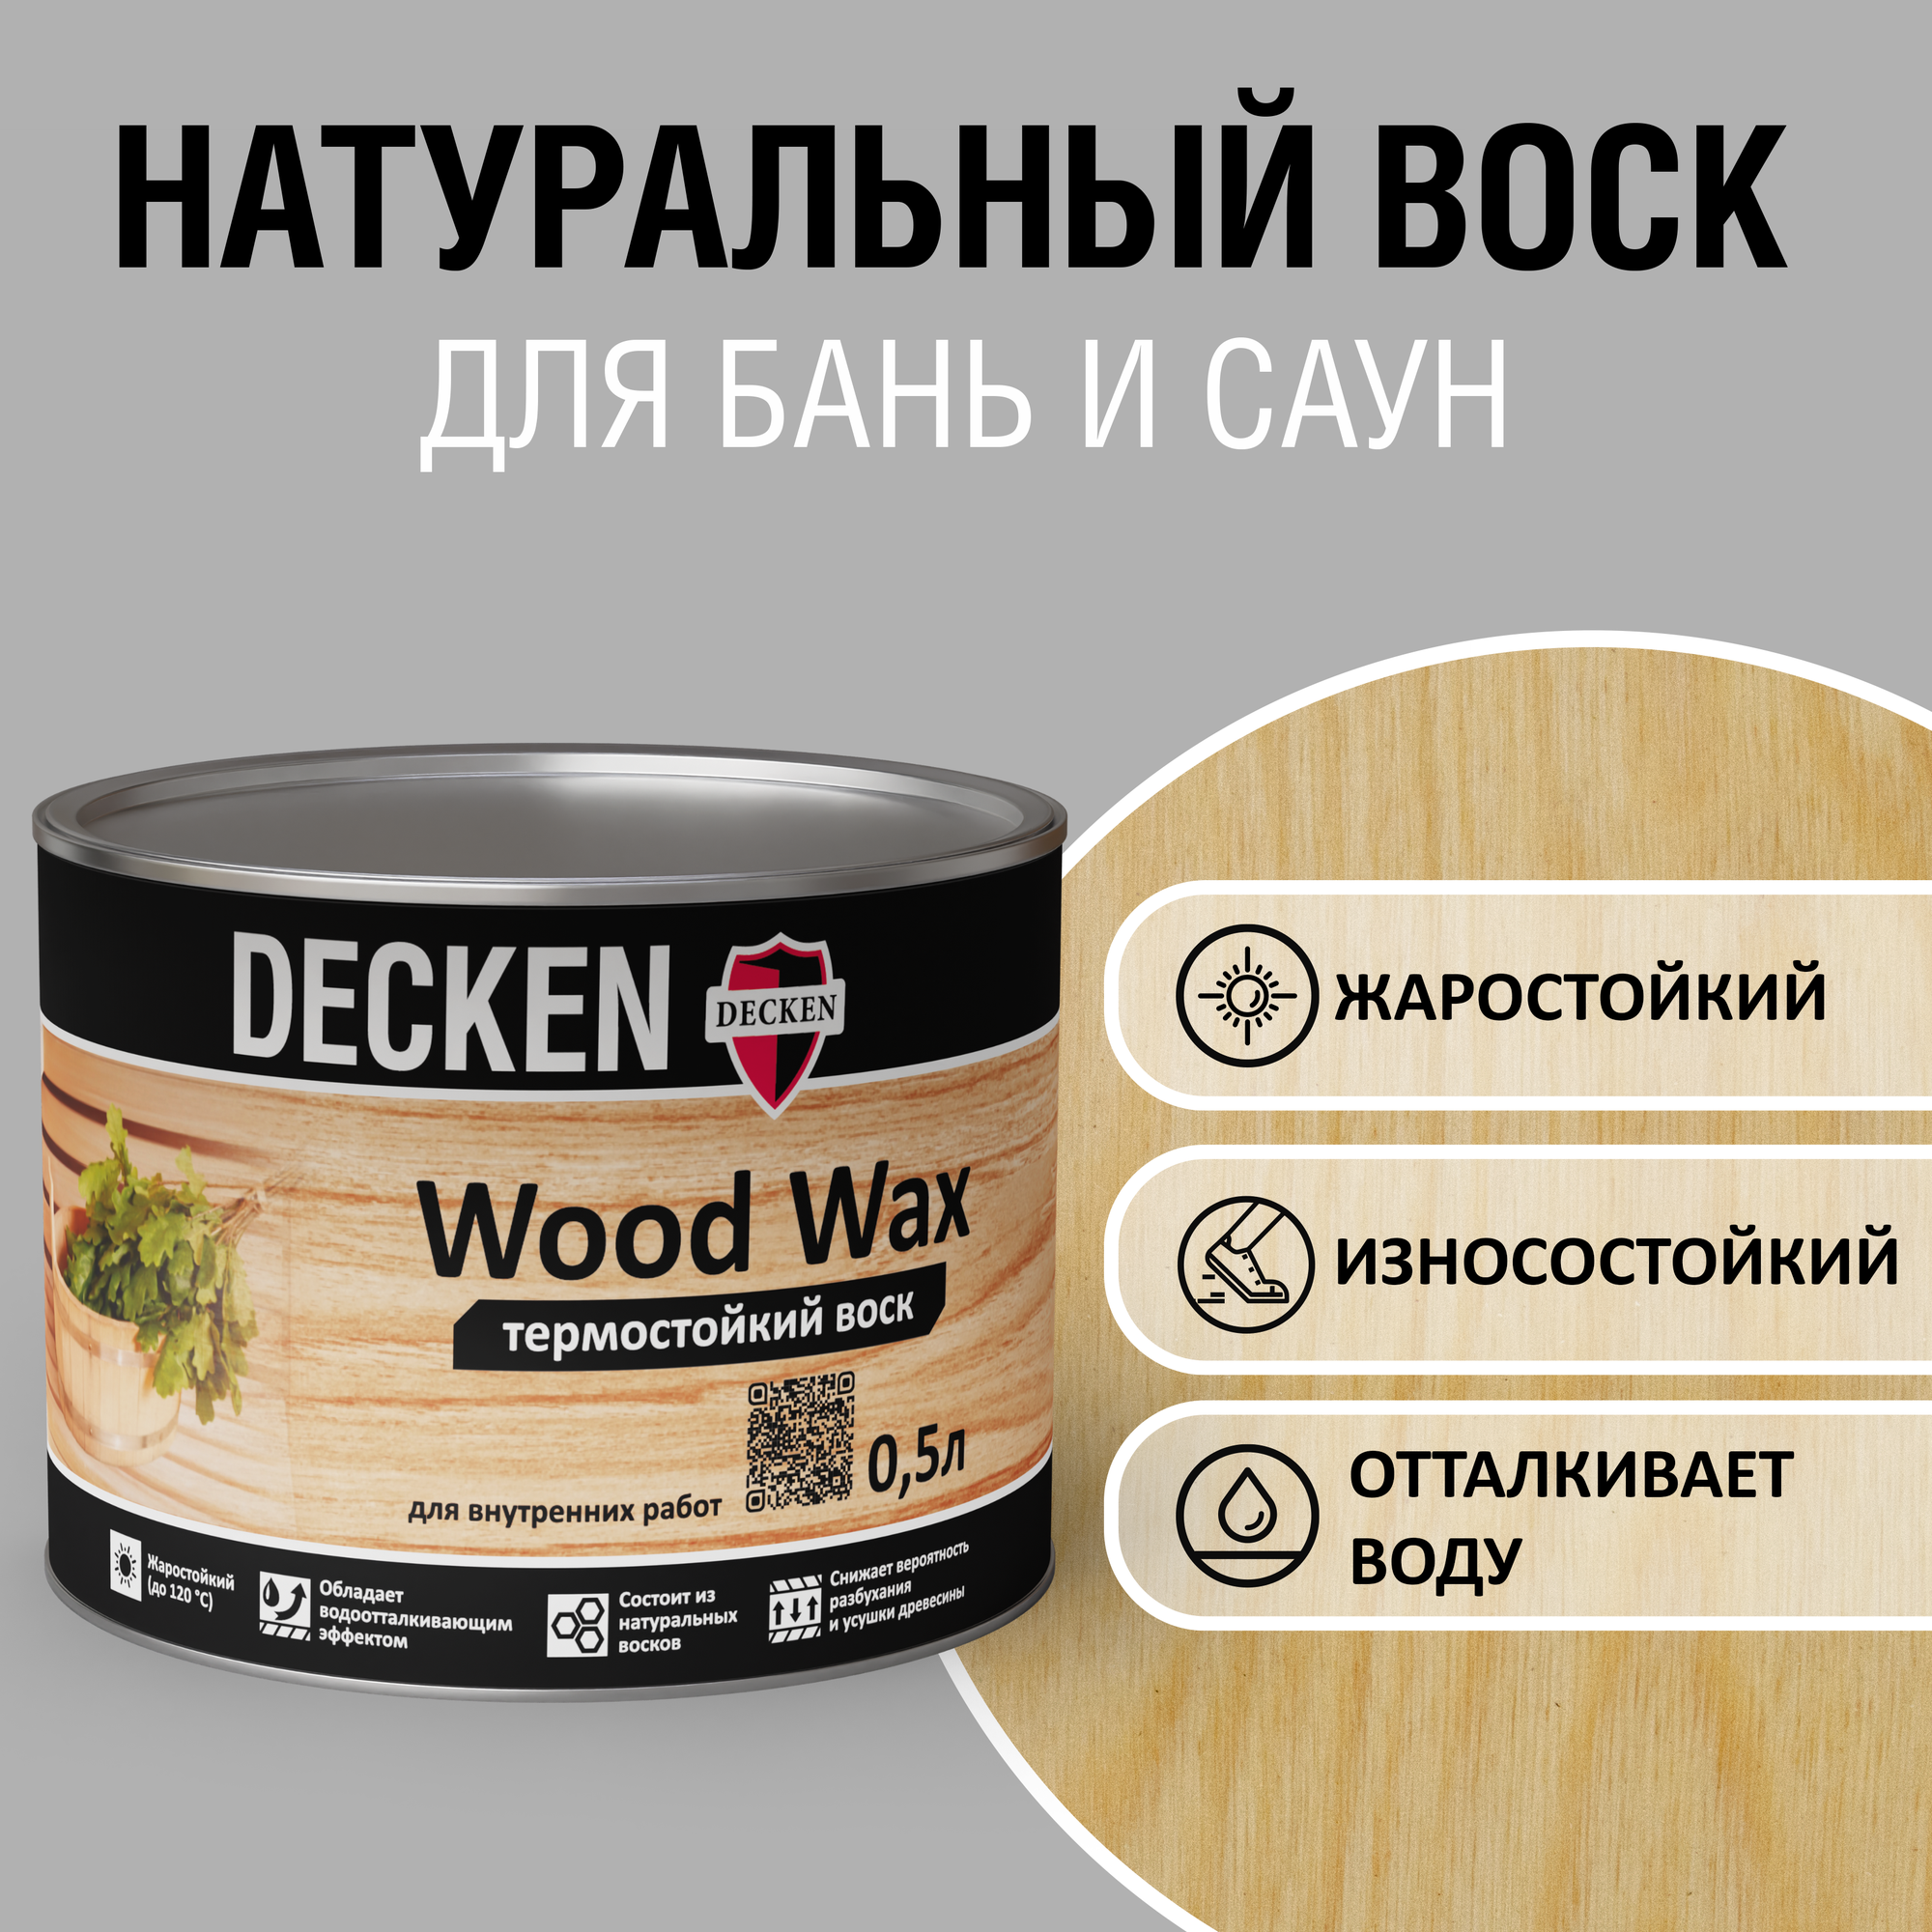 Термостойкий воск DECKEN Wood Wax бесцветный 0.5 л.